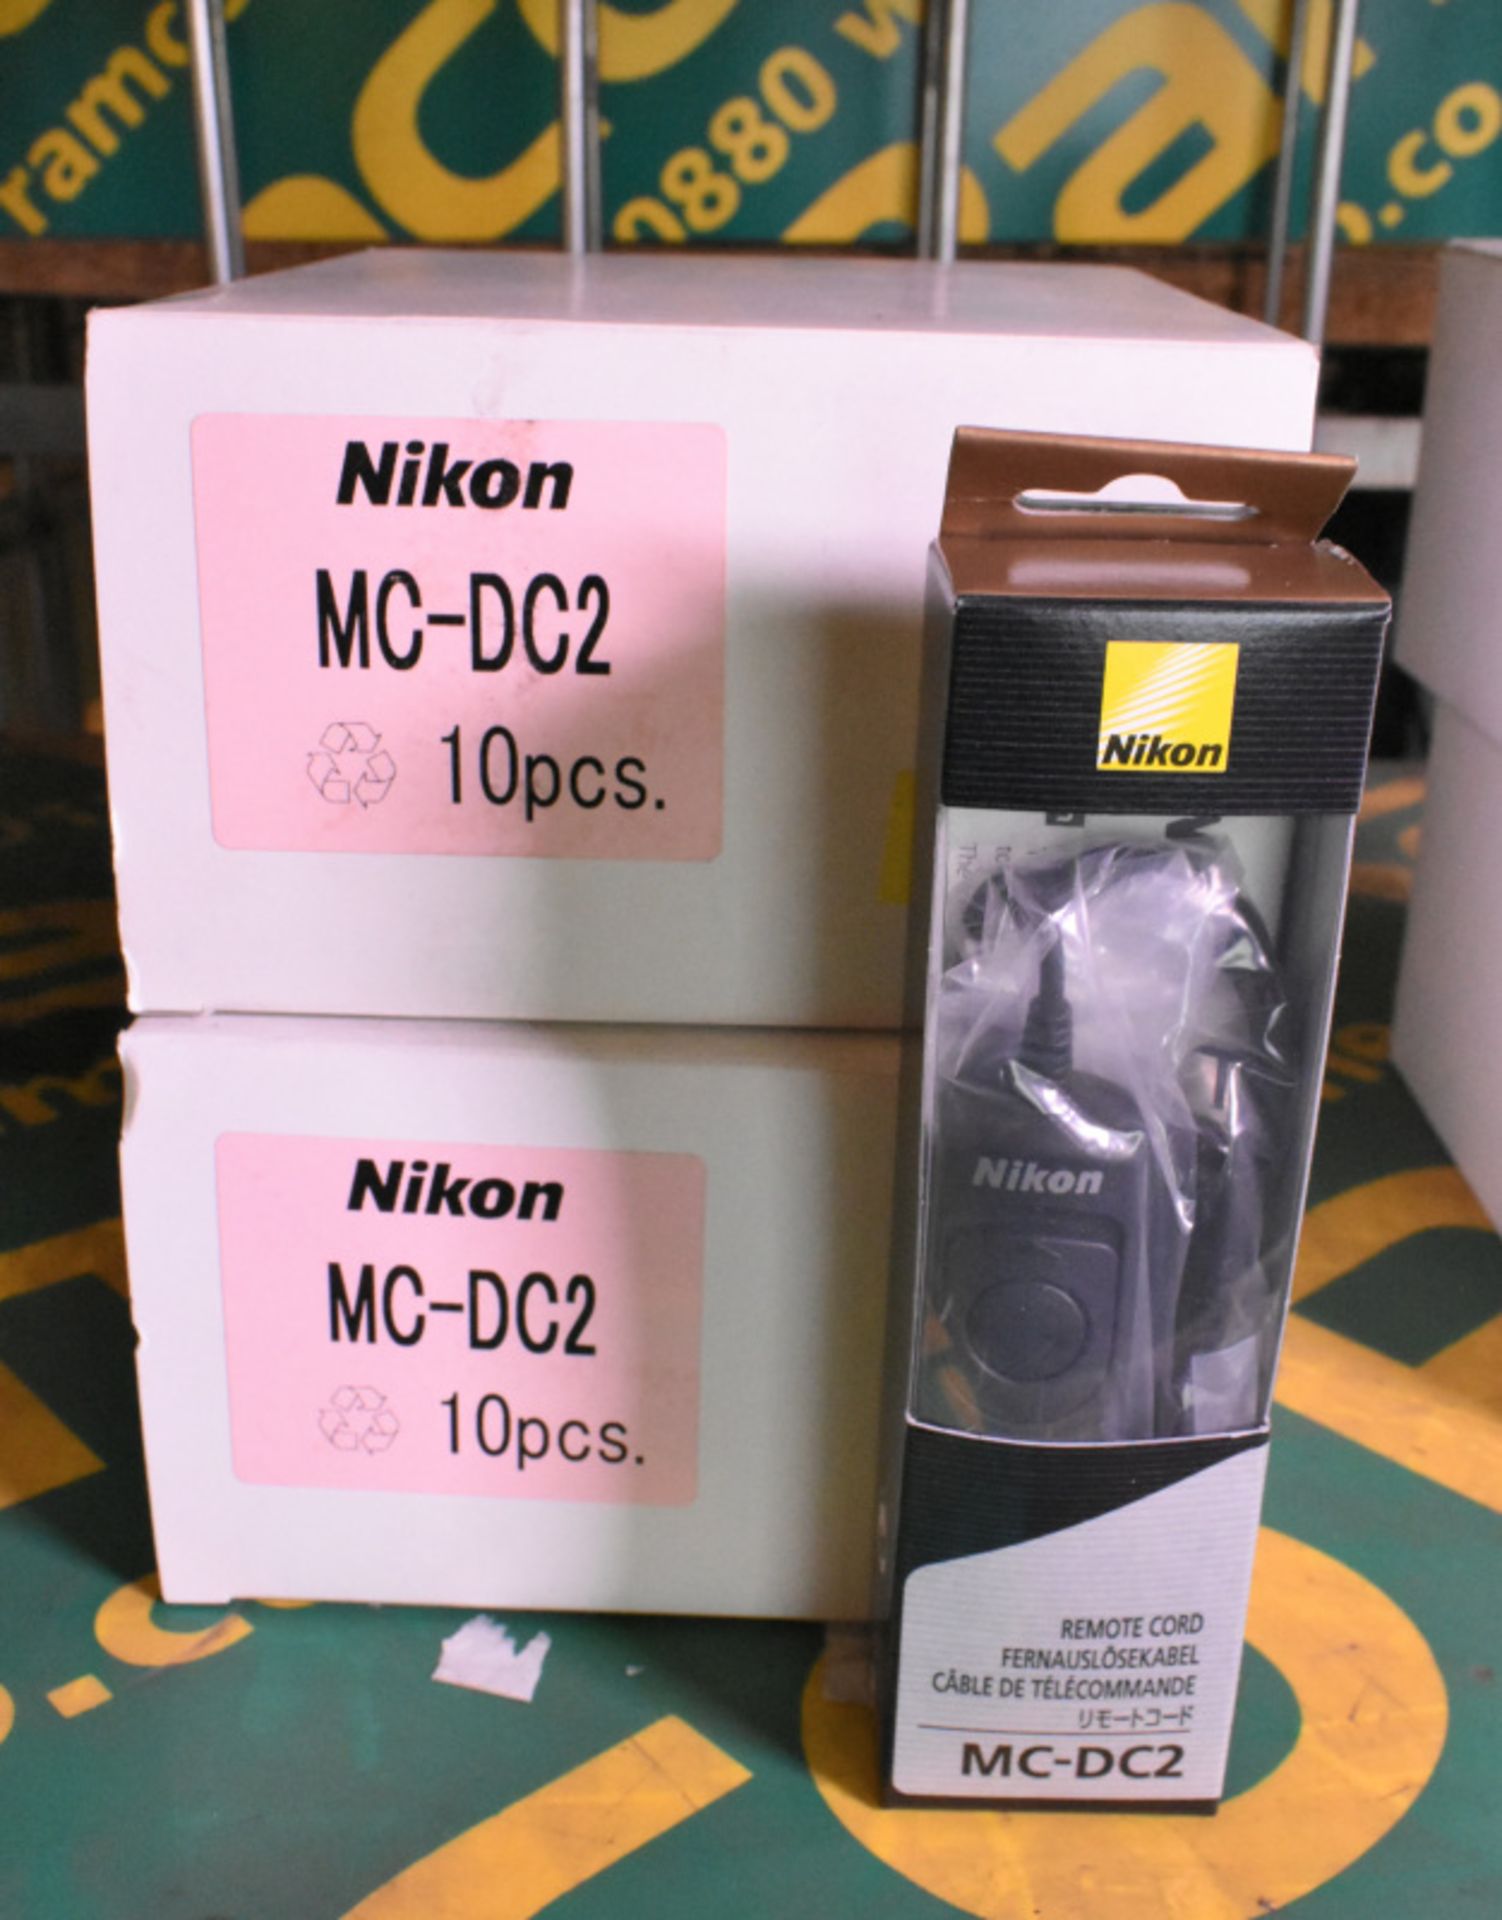 Nikon MC-DC2 Camera Remote Cords - 10 per box - 2 boxes